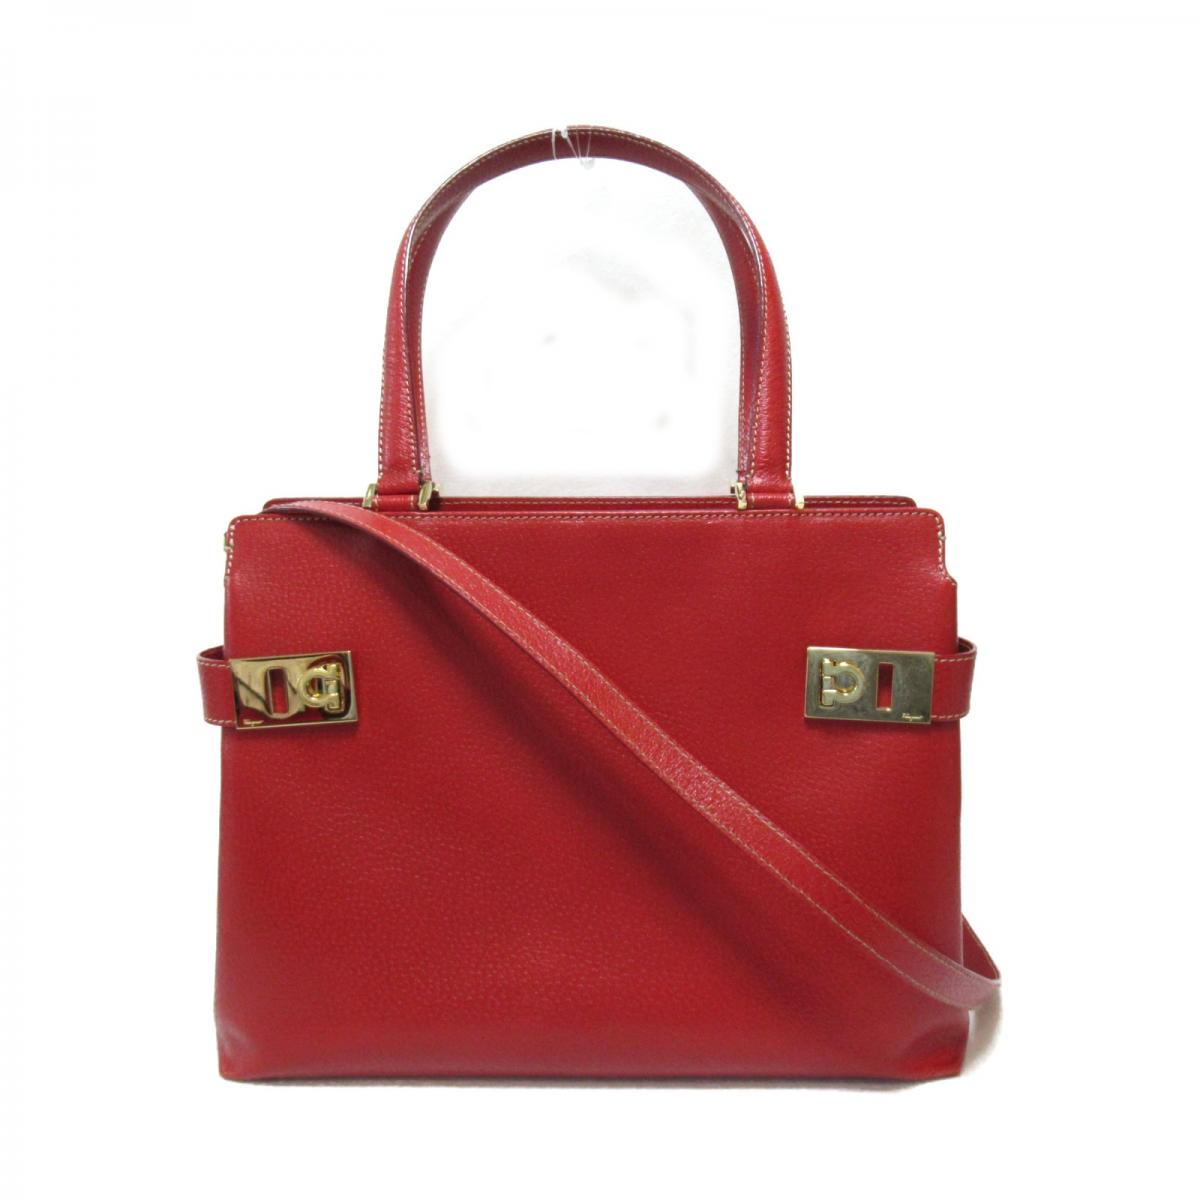 Gancini Leather Handbag DY-21 1347